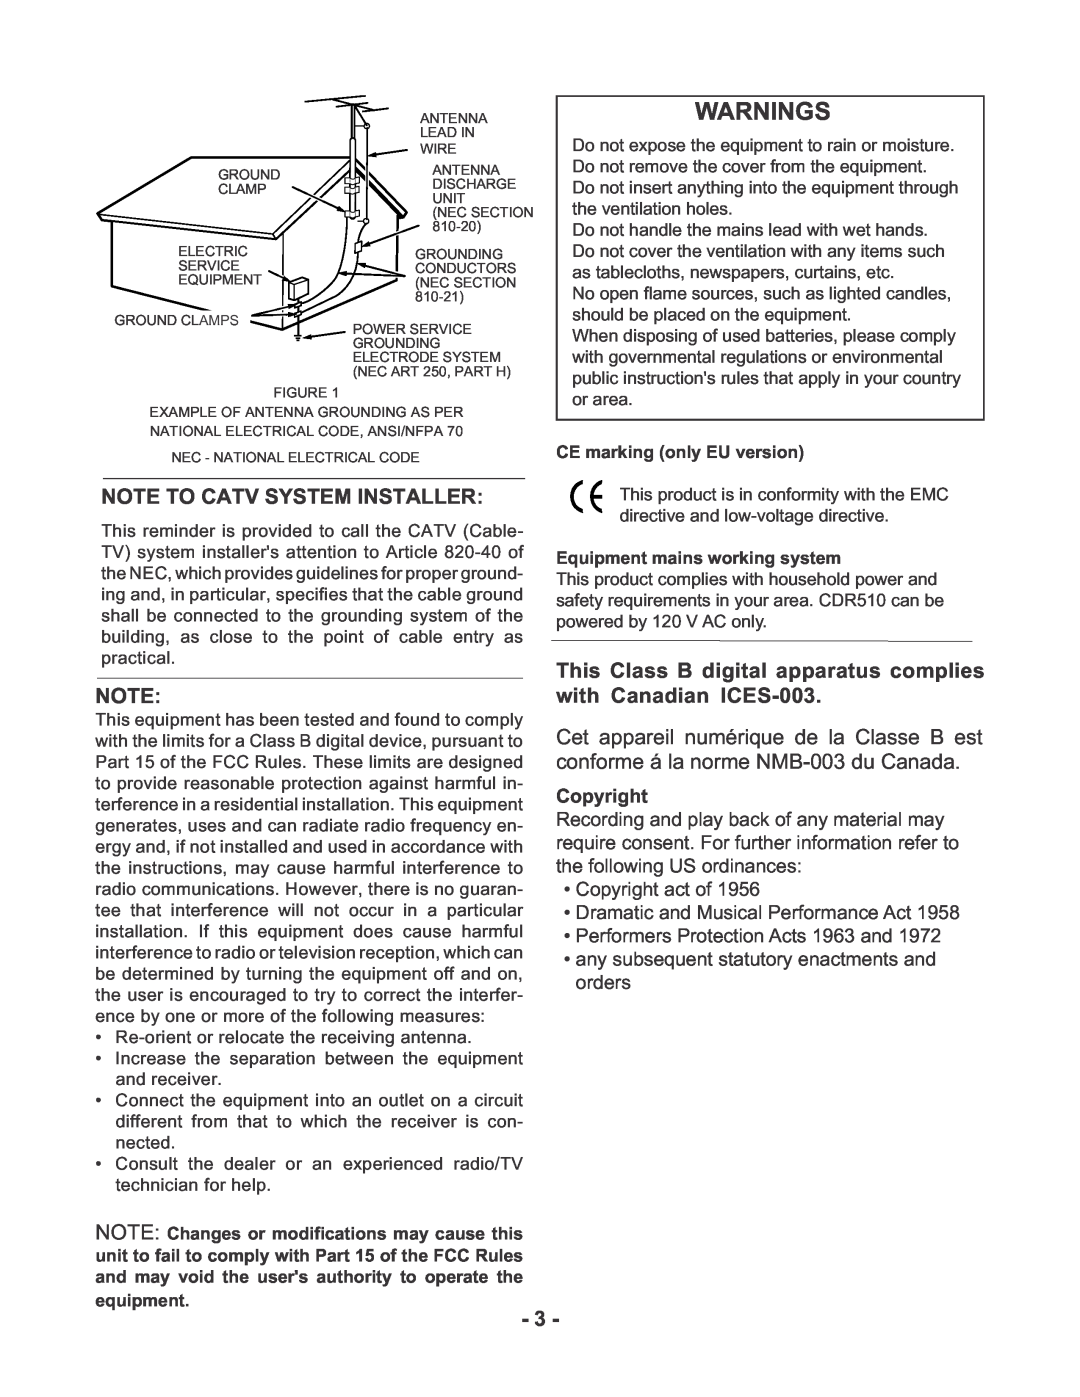 Marantz CDR510 manual Warnings, Note To Catv System Installer 